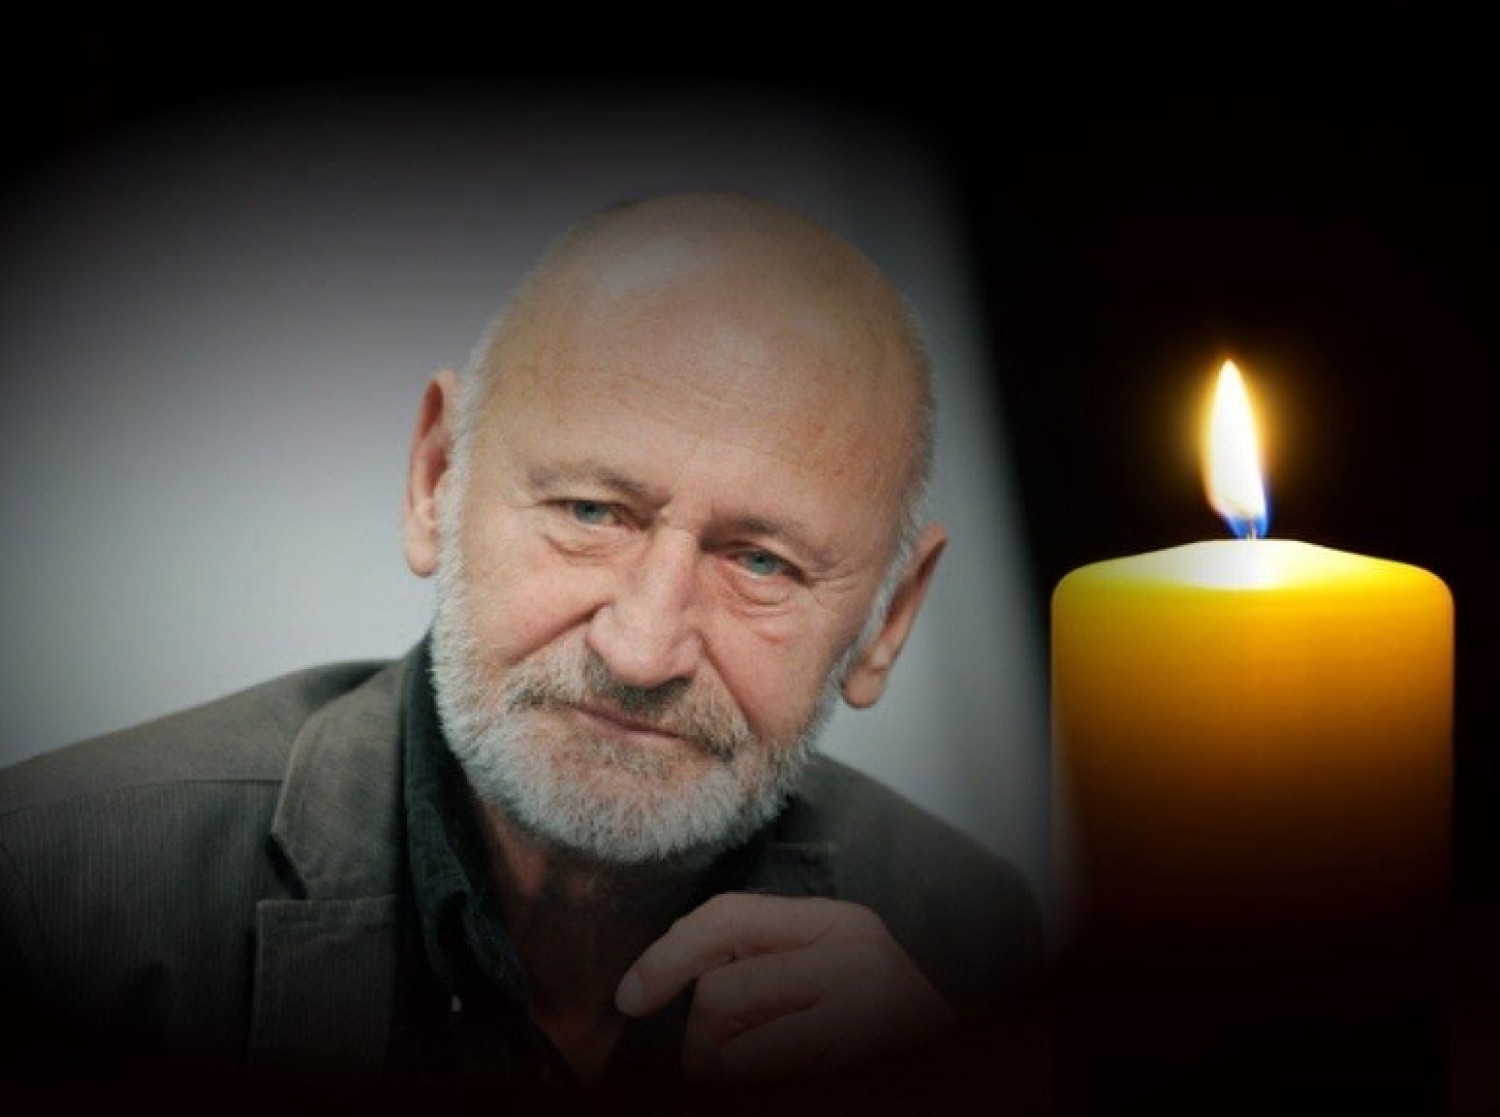 Gyászol Reviczky Gábor: Teljesen összeomlott a tragédiától! Könnyfakasztó mondatokat írt a facebook oldalára